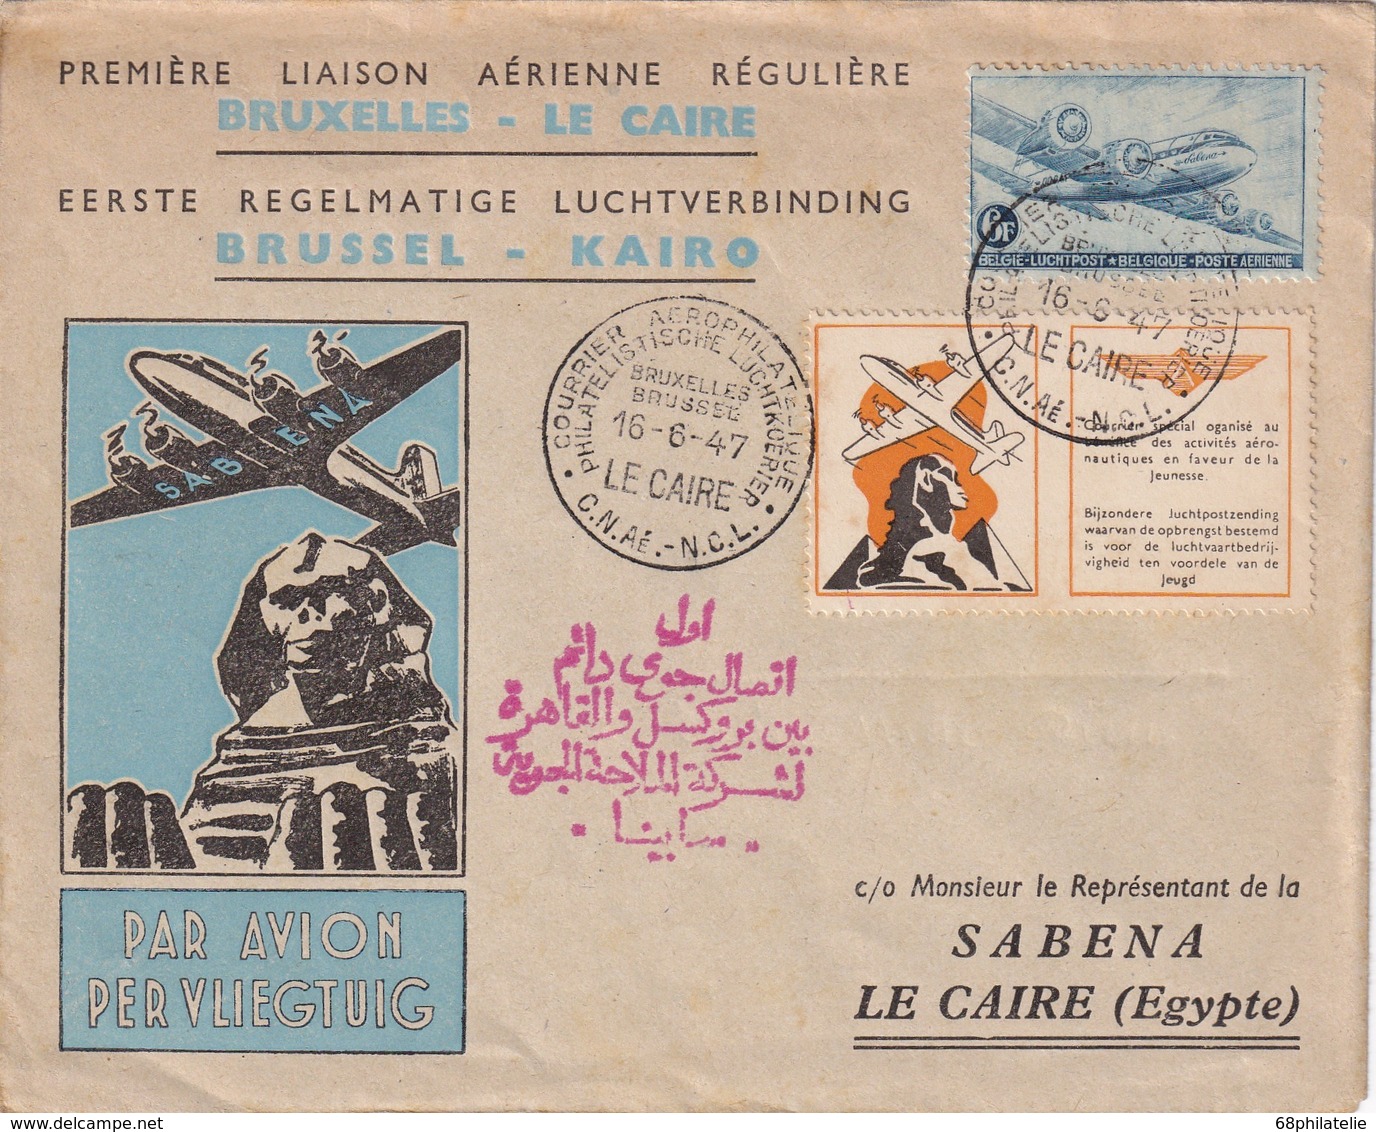 BELGIQUE 1947 PLI AERIEN DE BRUXELLES 1ERE LIAISON AERIENNE REGULIERE BRUXELLES-LE CAIRE - Lettres & Documents